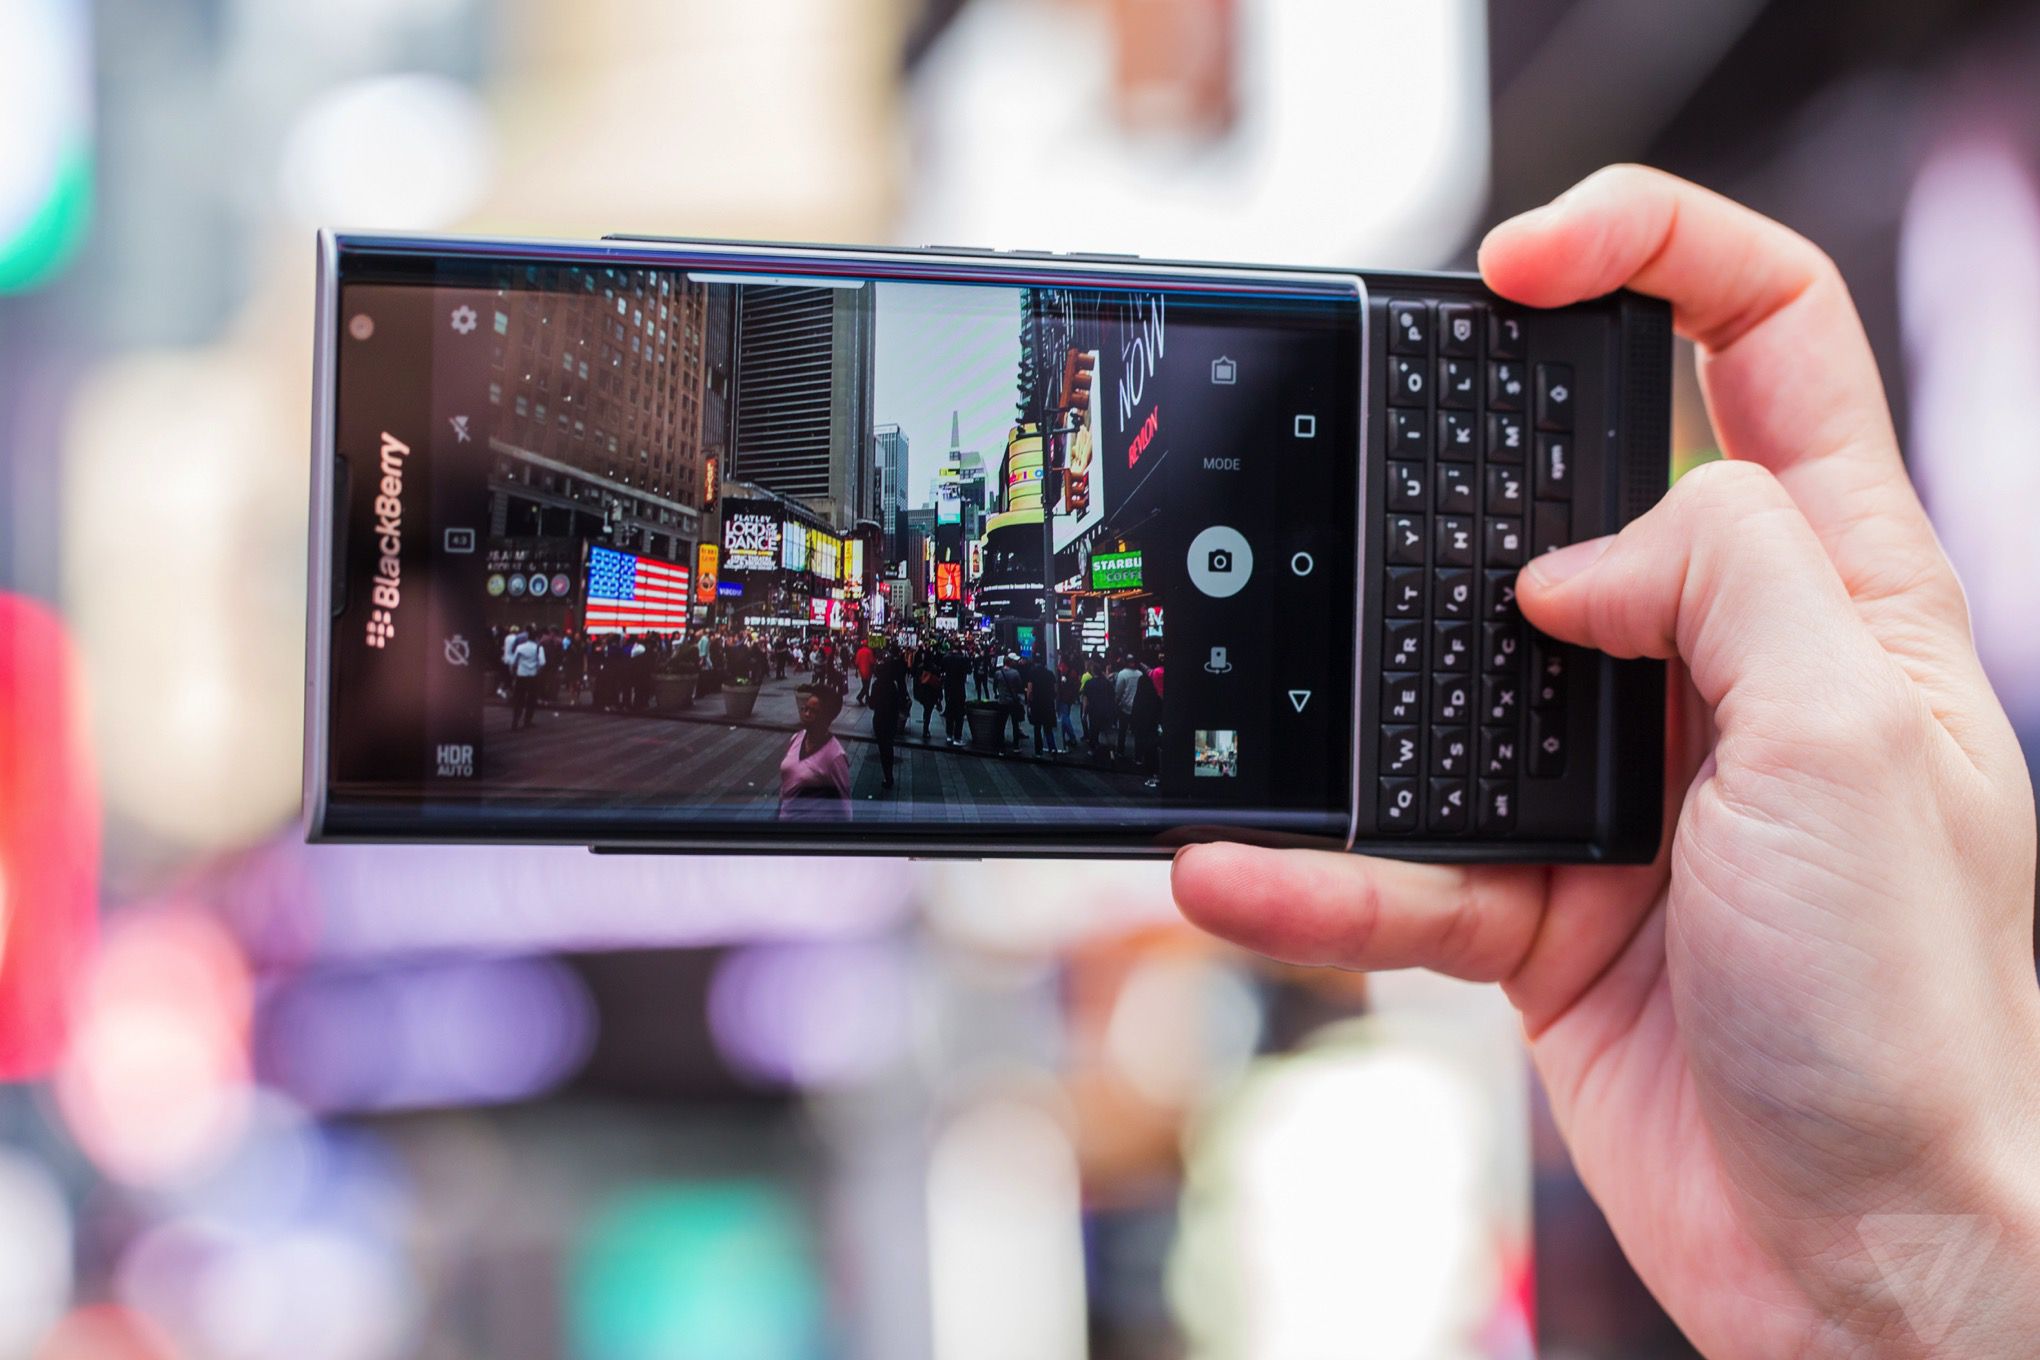 再見 BB10 : Blackberry 手機未來將全面轉向 Android 系統 1